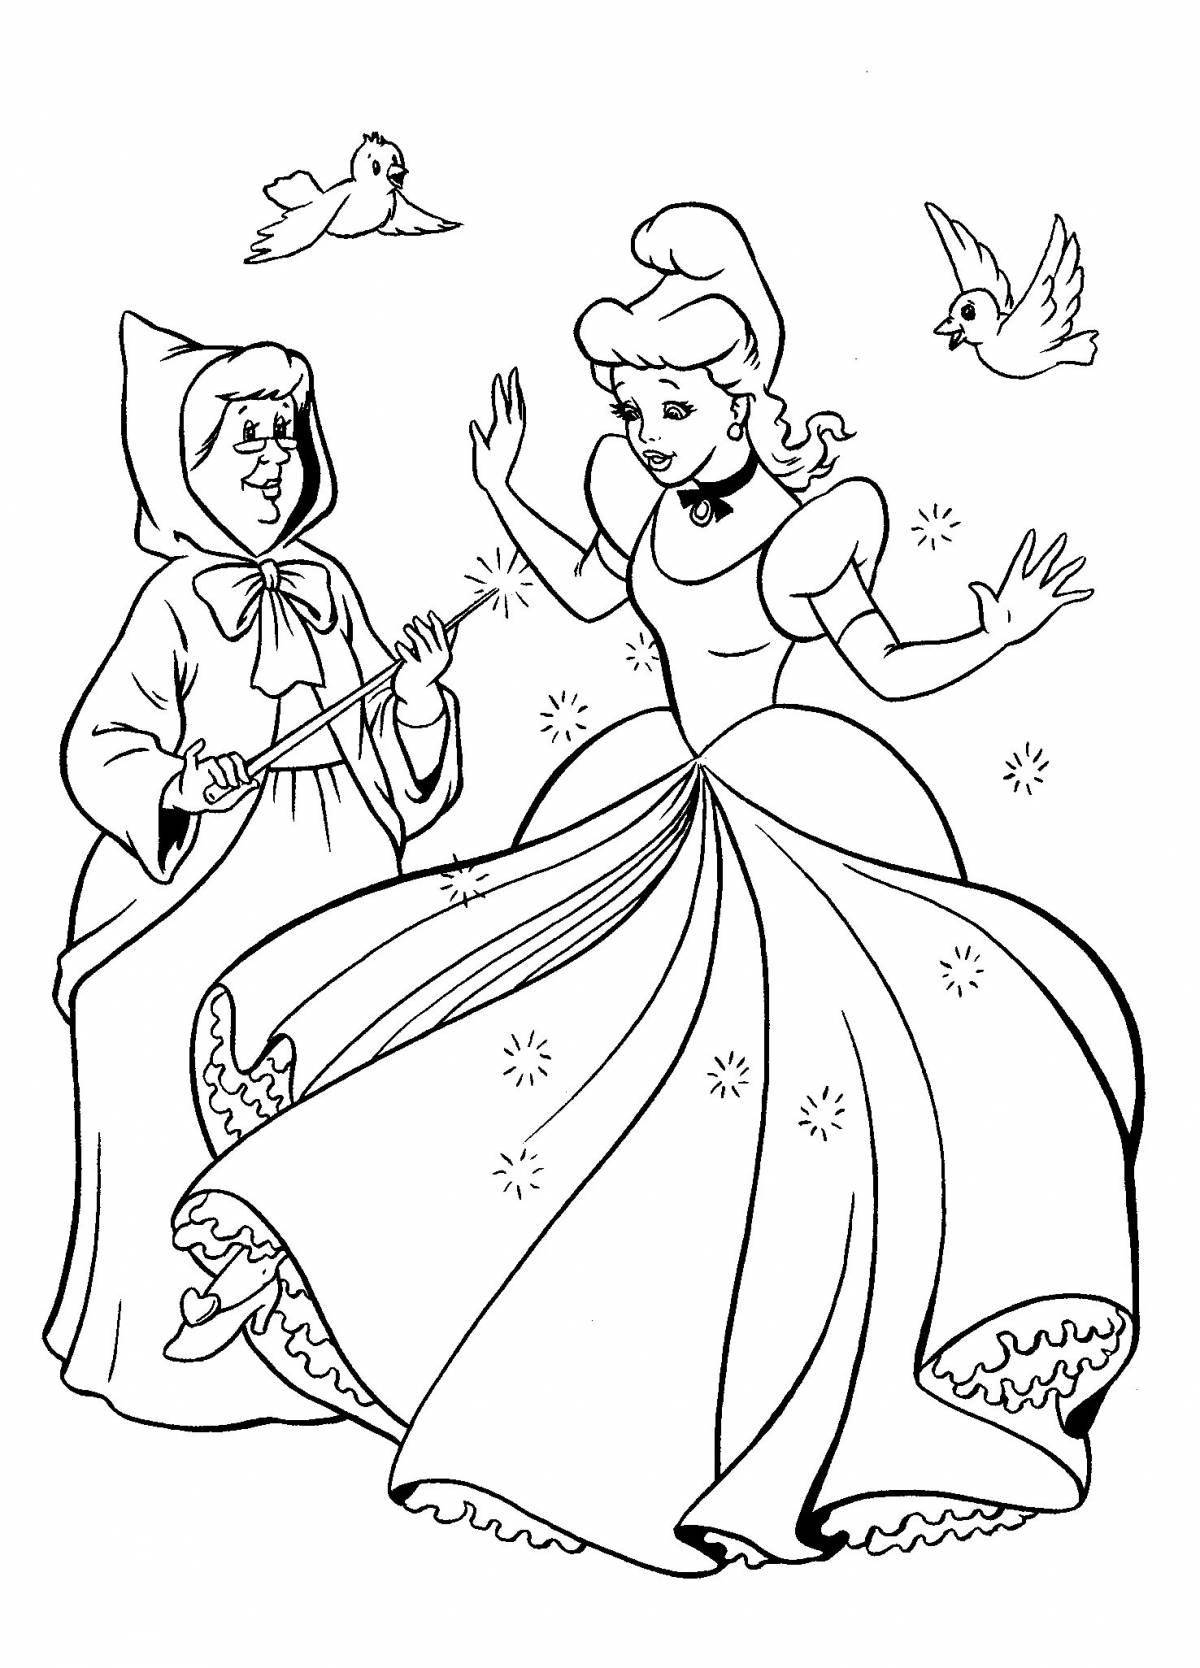 Cinderella shining princess coloring page